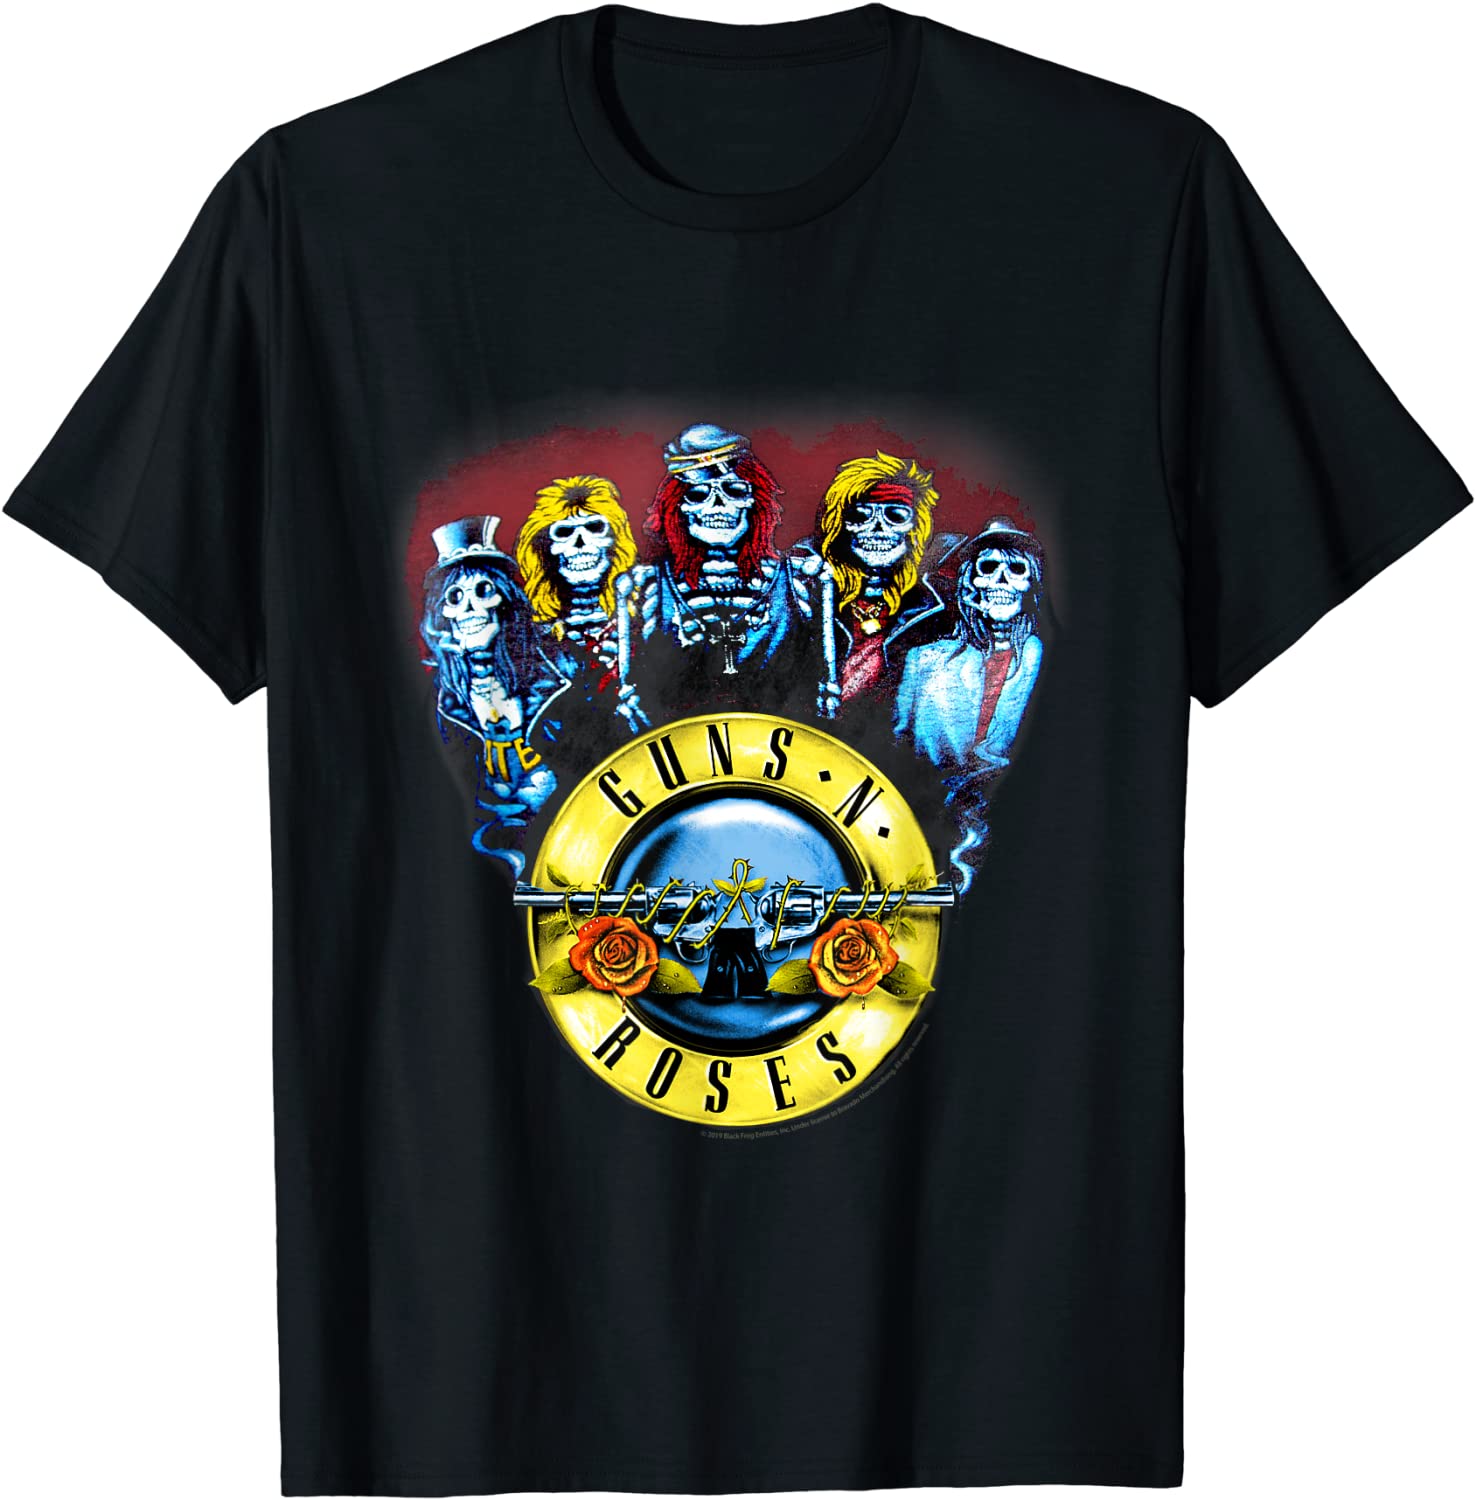 band t shirts - Guns n' Roses: Skeleton Guns Slim Fit T-shirt